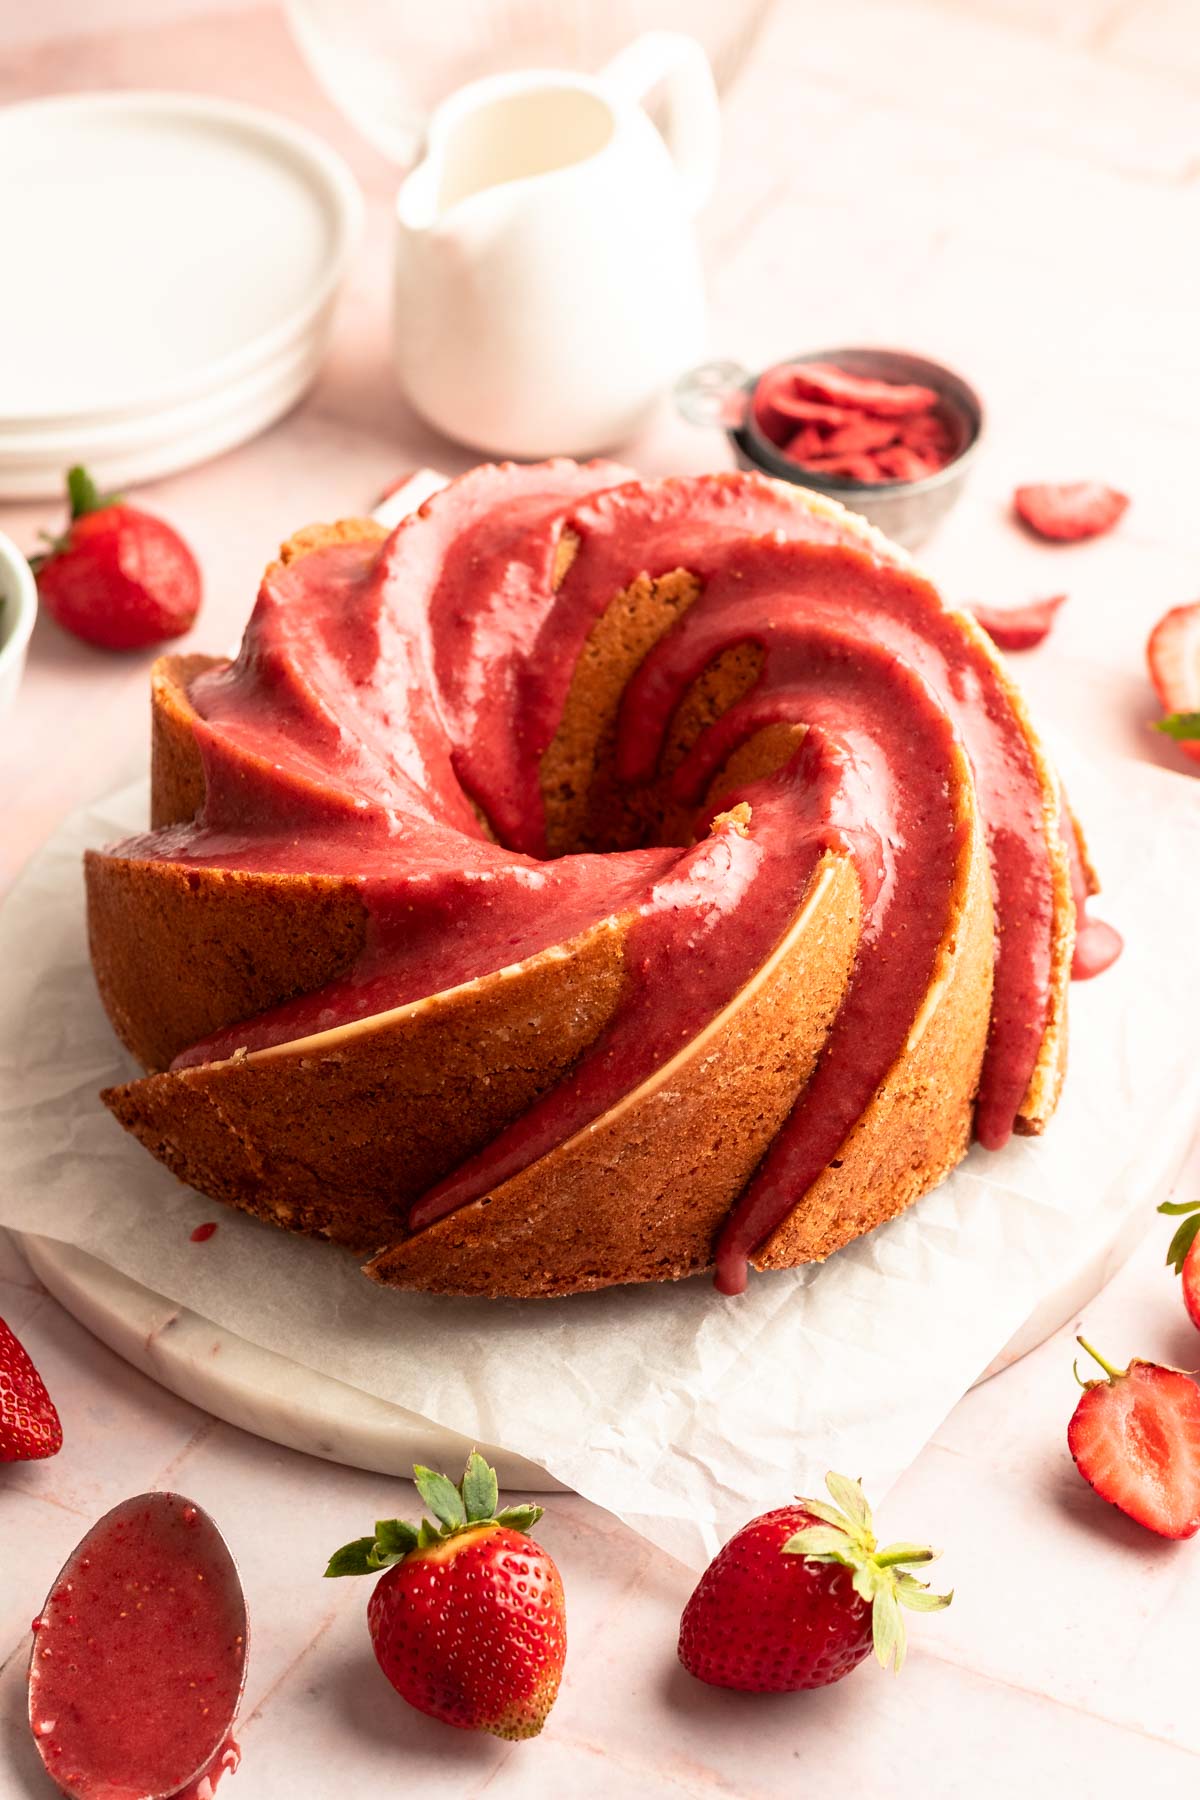 Strawberry bundt cake on a cake platter.